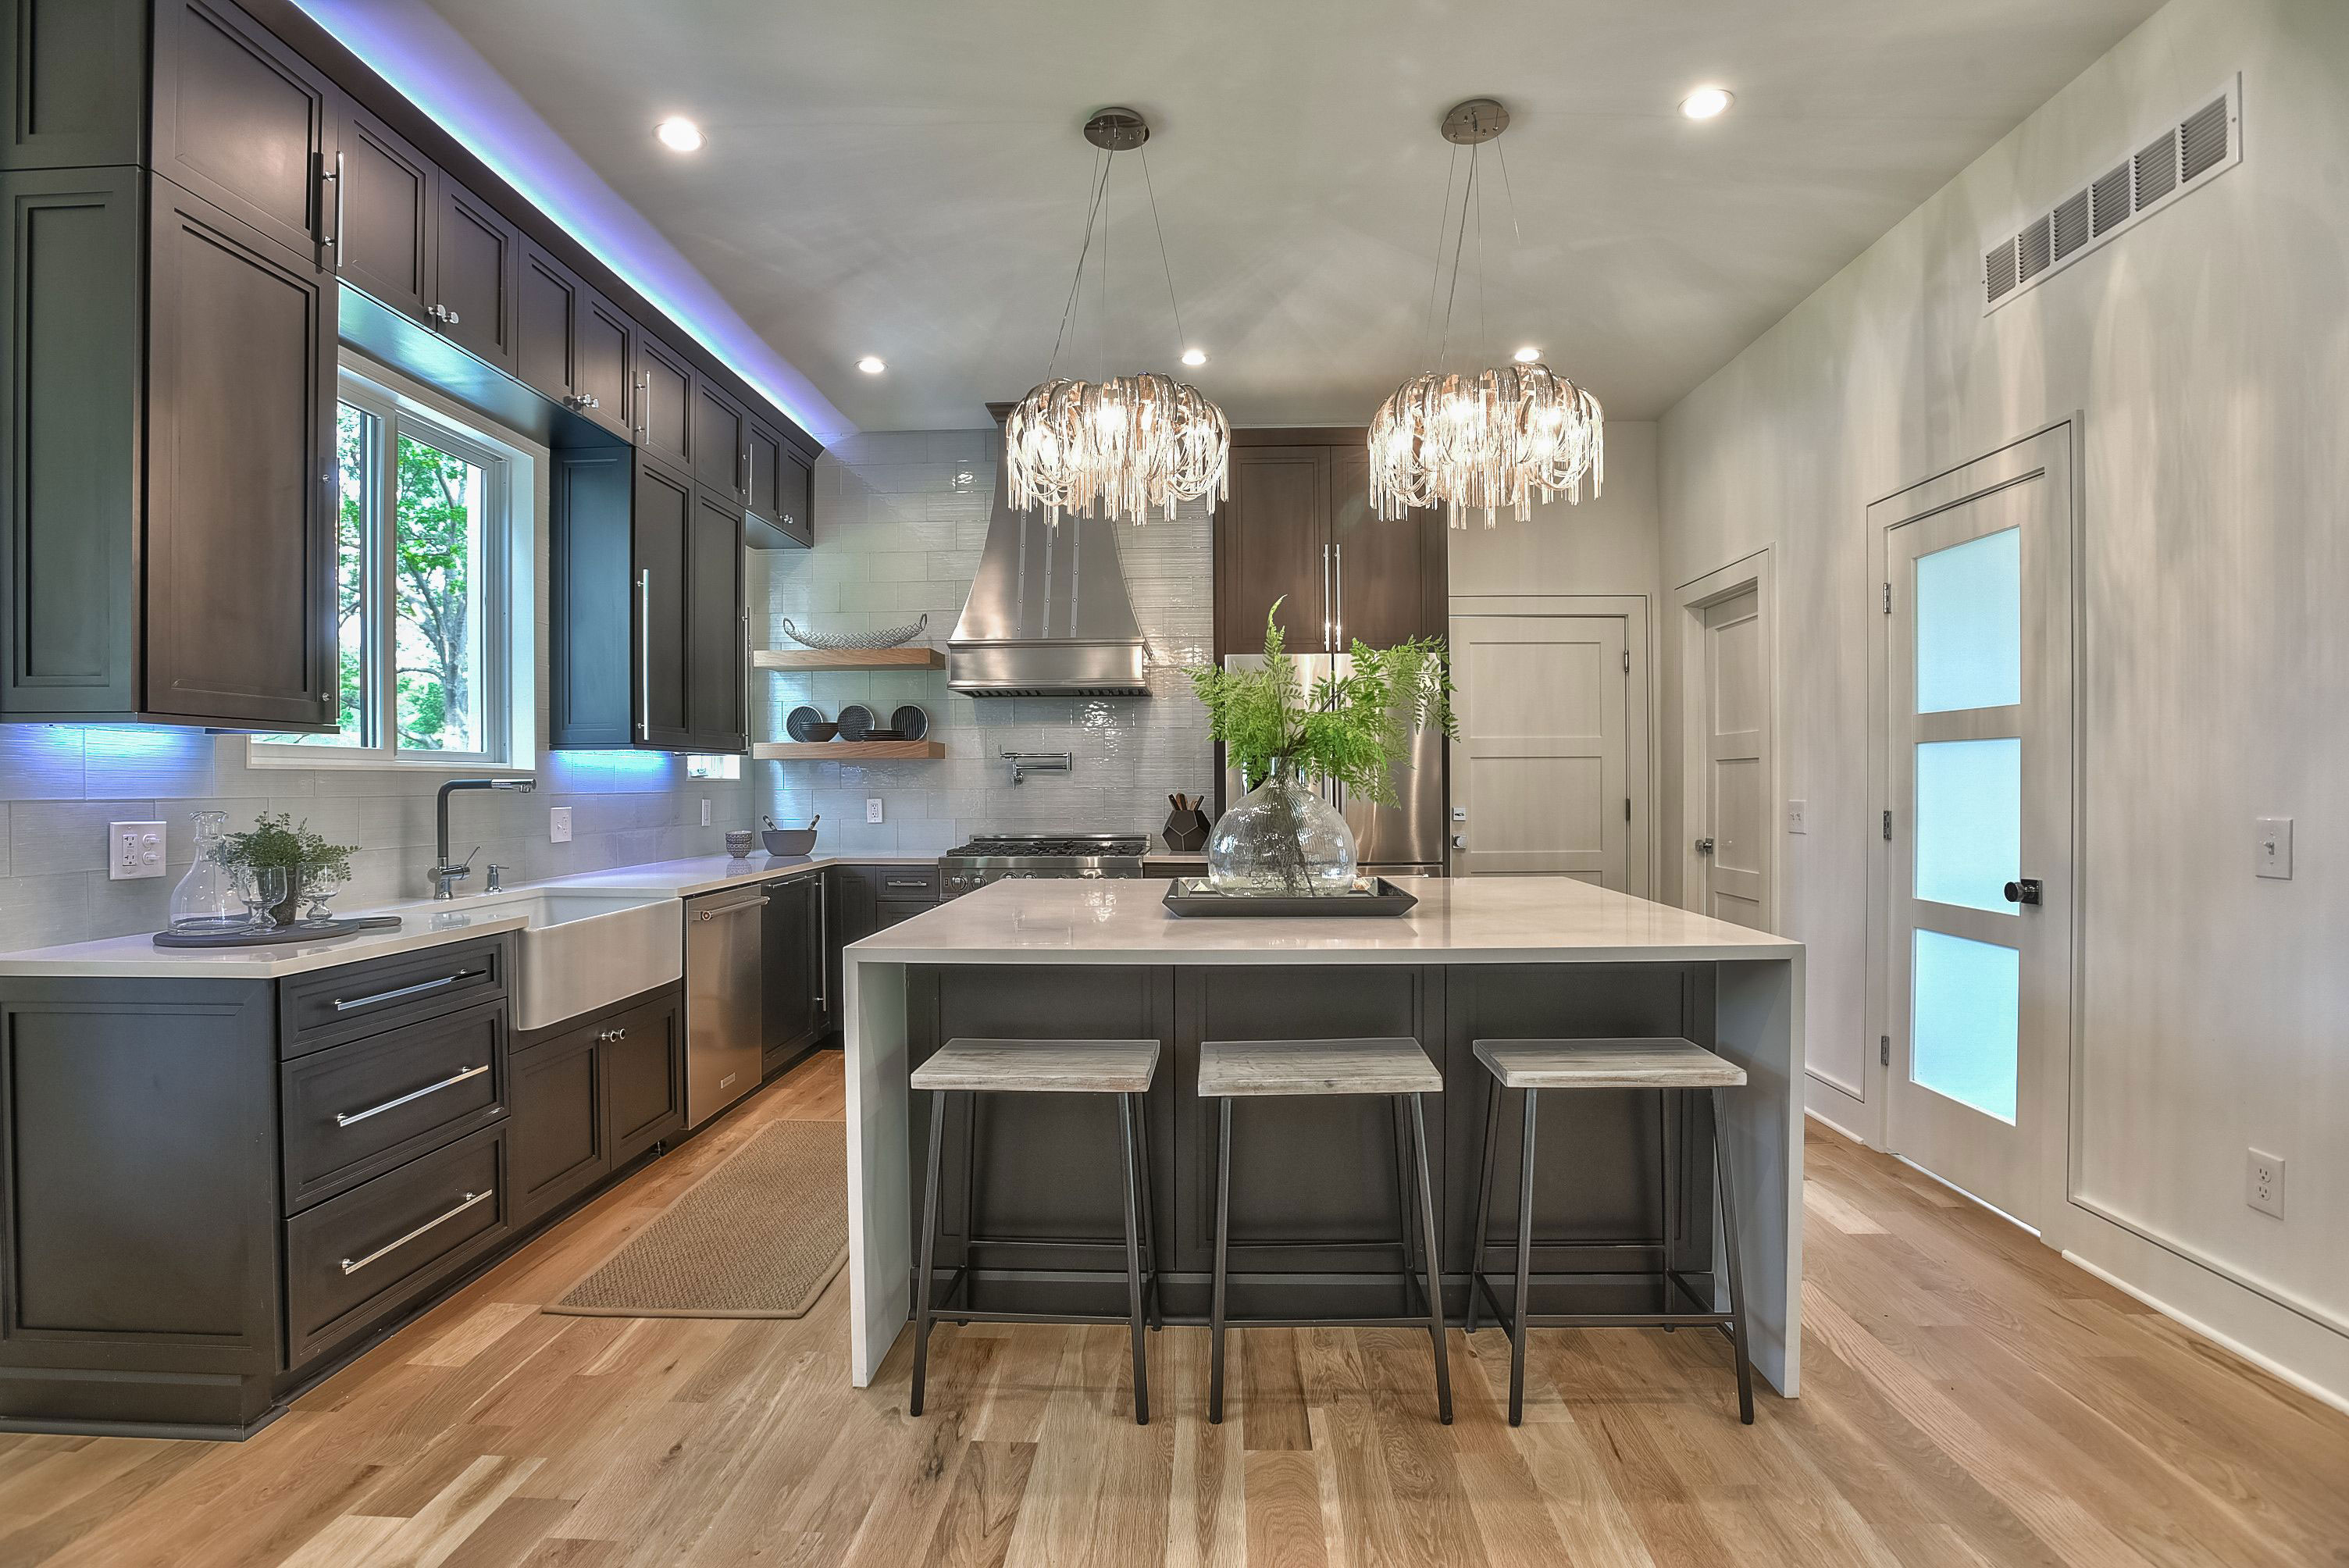 A stylish range hood with a beautiful cottage kitchen with grey kitchen cabinets, white kitchen countertops, stunning brick backsplash